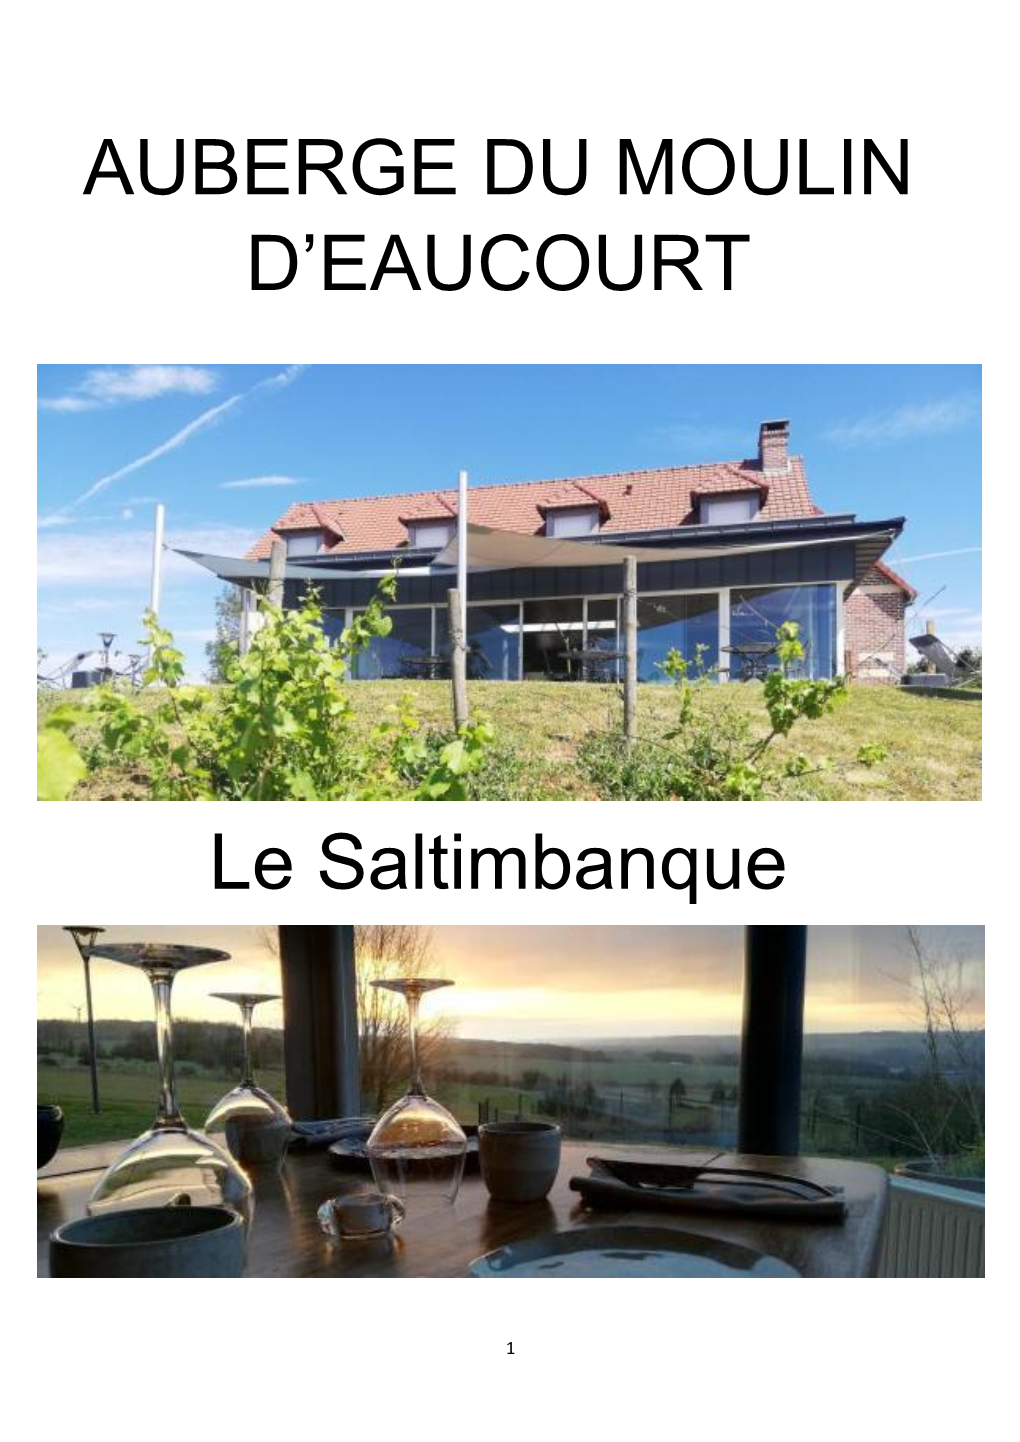 AUBERGE DU MOULIN D'eaucourt Le Saltimbanque